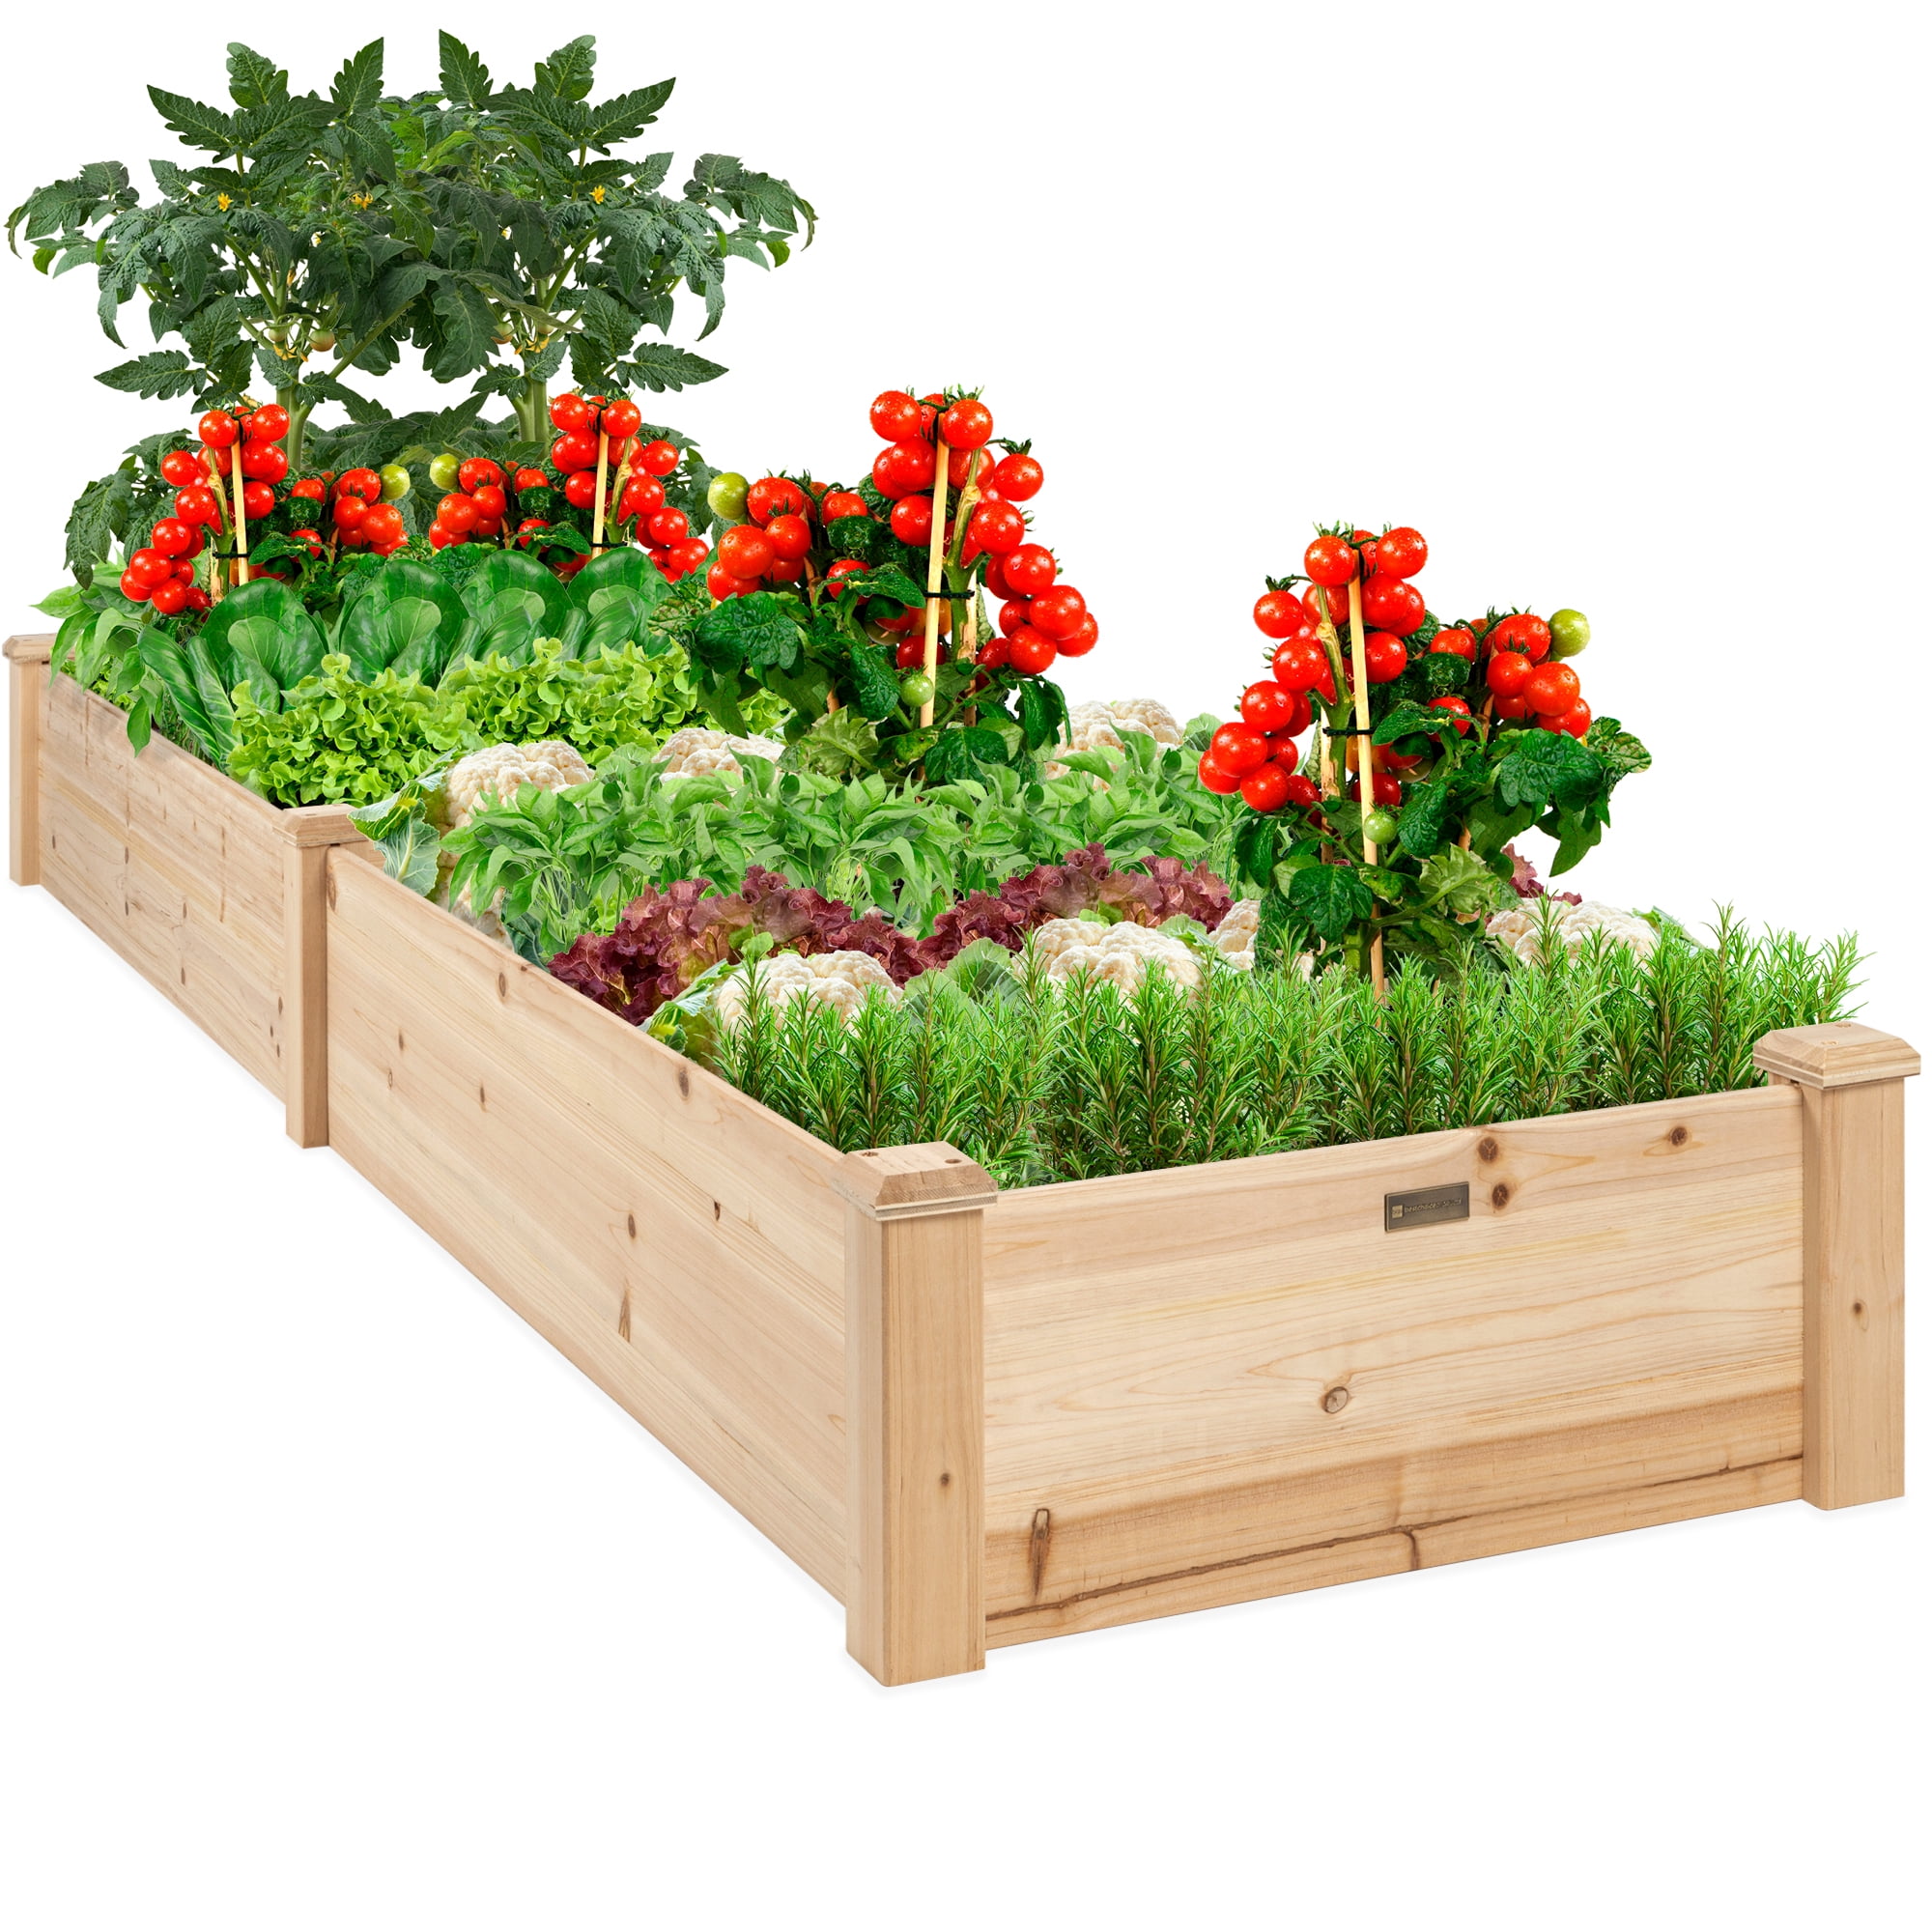 EBRTSET Raised Garden Bed 8 x 4 Planter Box Natural Wood Garden Box for Vegetables 